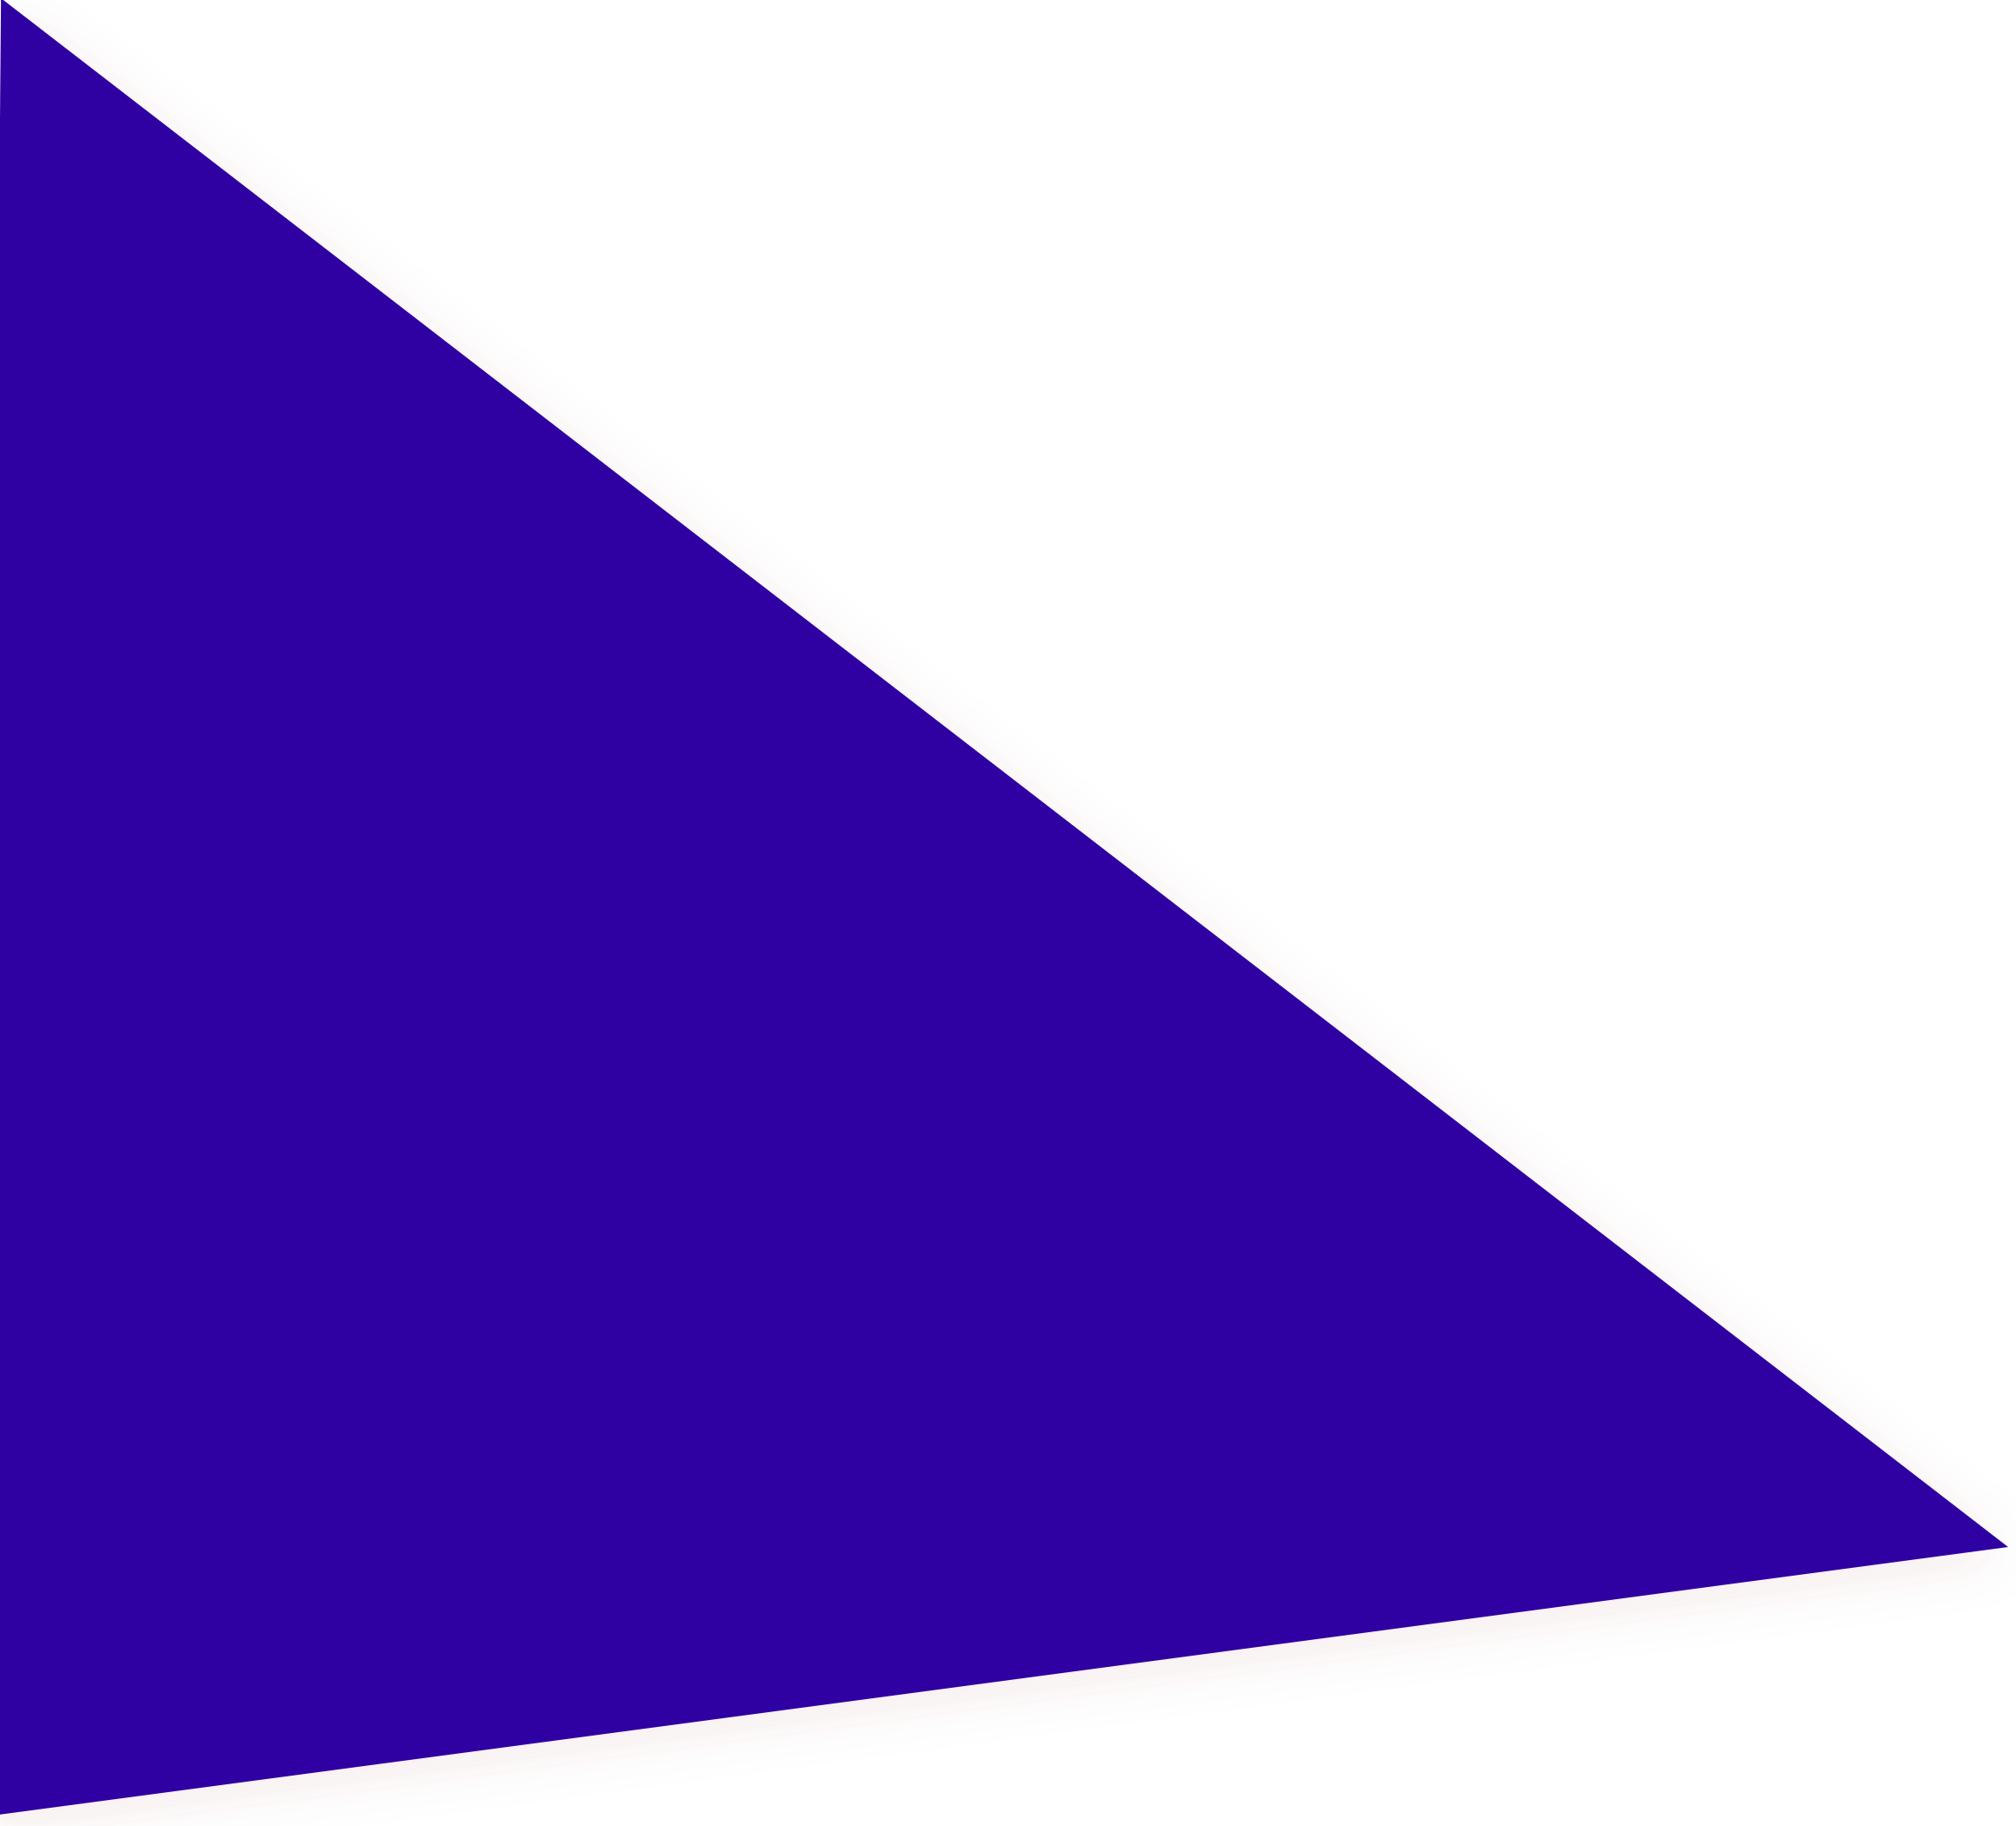 Funky blue background triangle shape